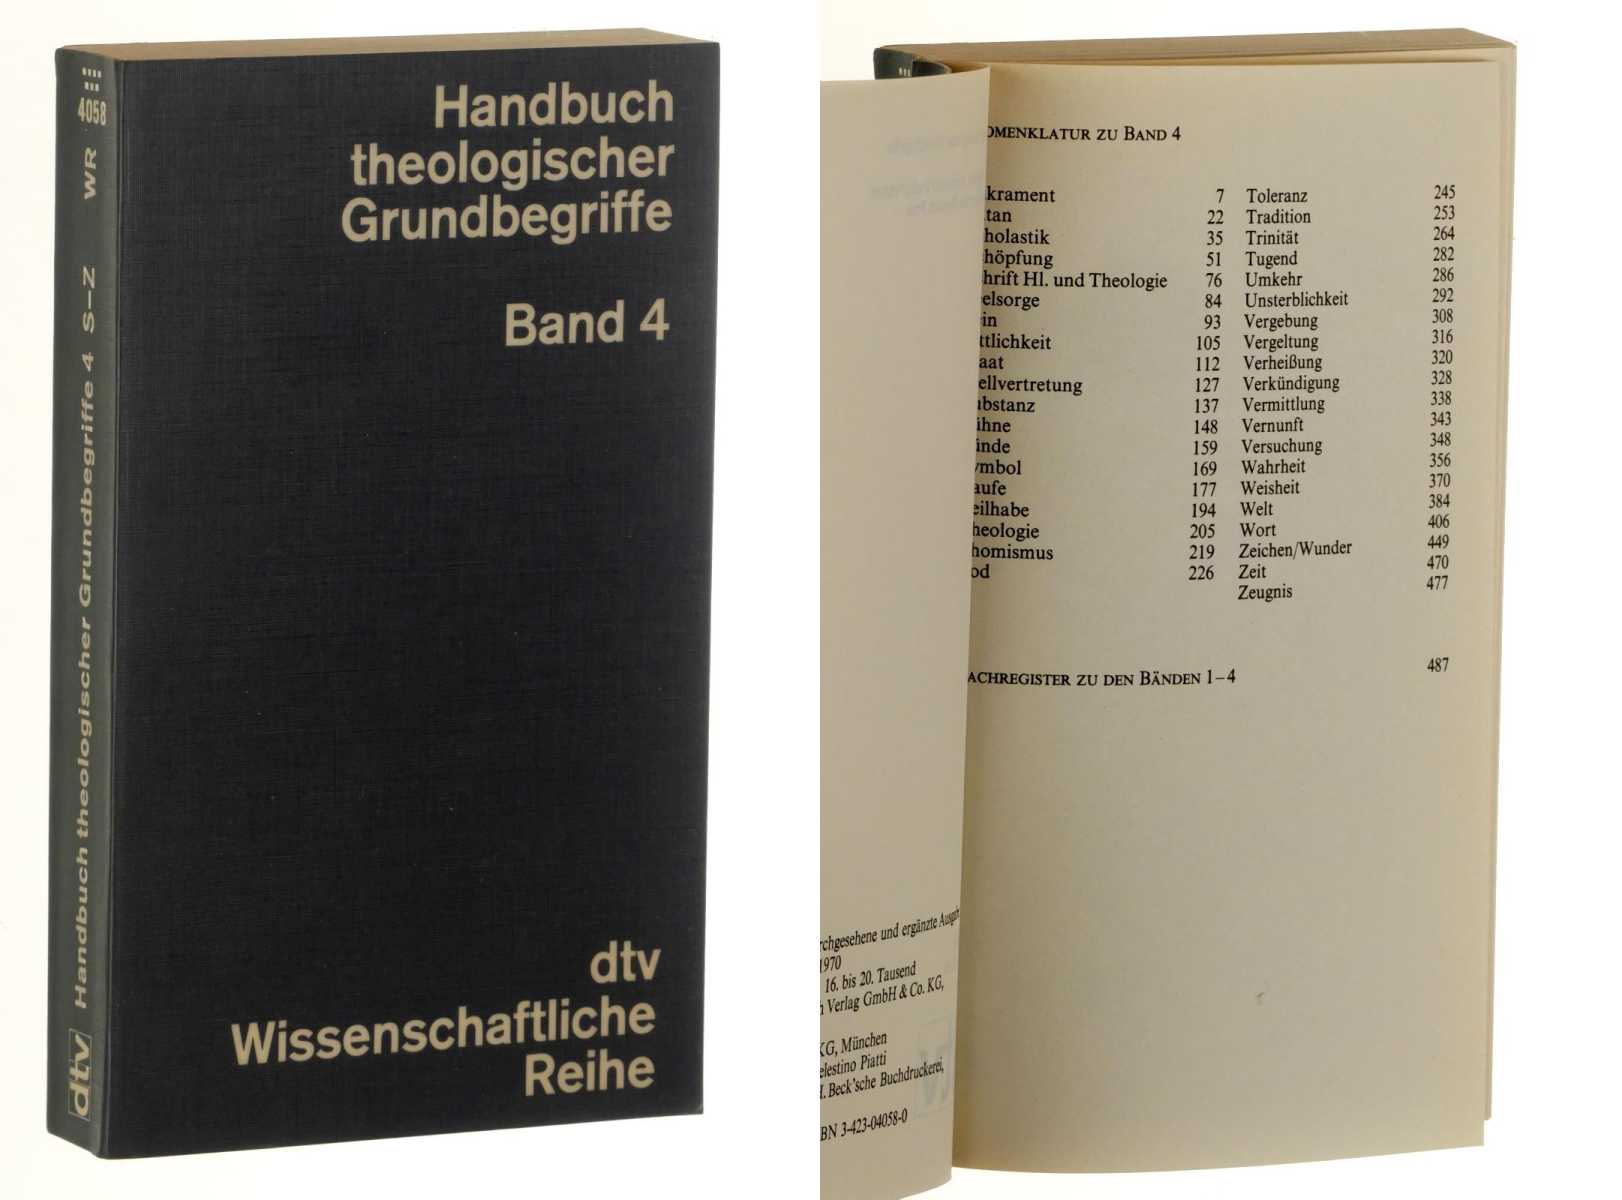   Handbuch Theologischer Grundbegriffe. Hrsg. v. Heinrich Fries. 